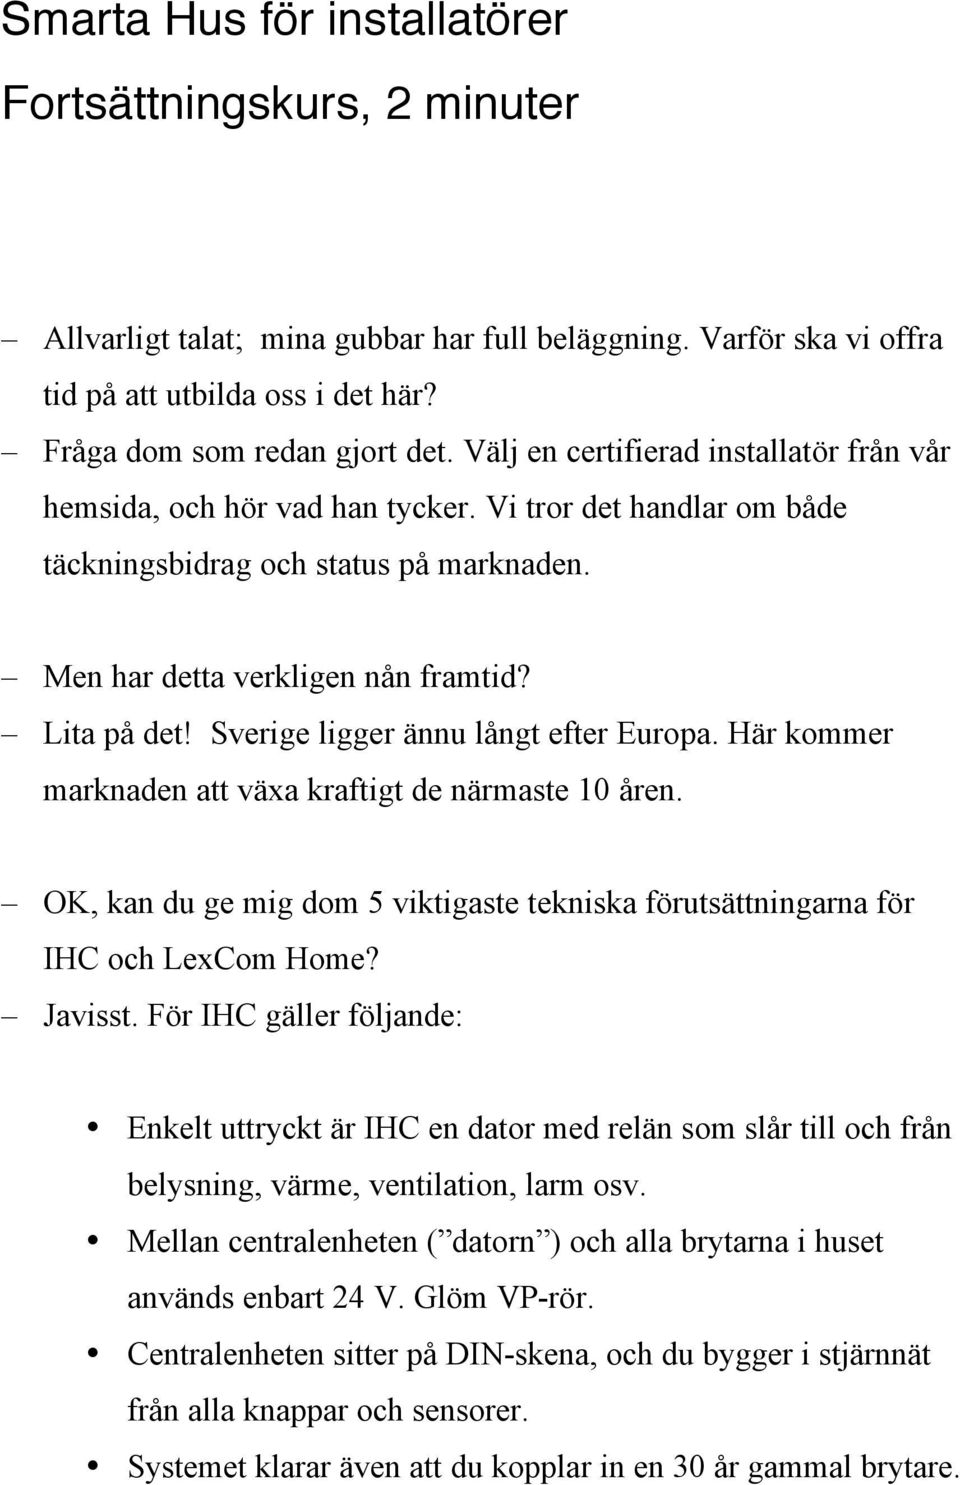 Sverige ligger ännu långt efter Europa. Här kommer marknaden att växa kraftigt de närmaste 10 åren. OK, kan du ge mig dom 5 viktigaste tekniska förutsättningarna för IHC och LexCom Home? Javisst.